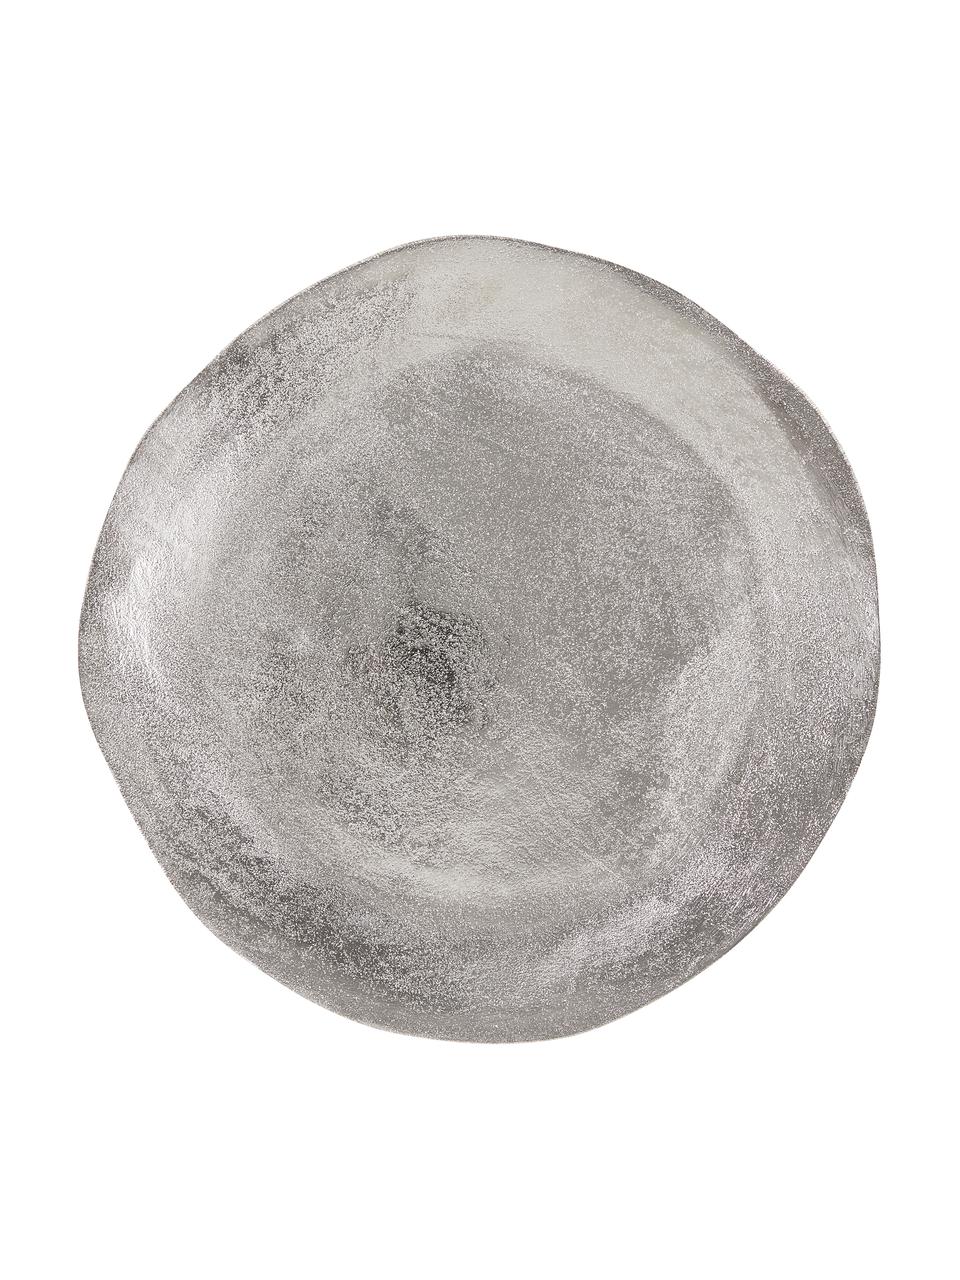 Vassoio decorativo grigio chiaro Banquet, Alluminio rivestito, Grigio chiaro, Ø 32 cm